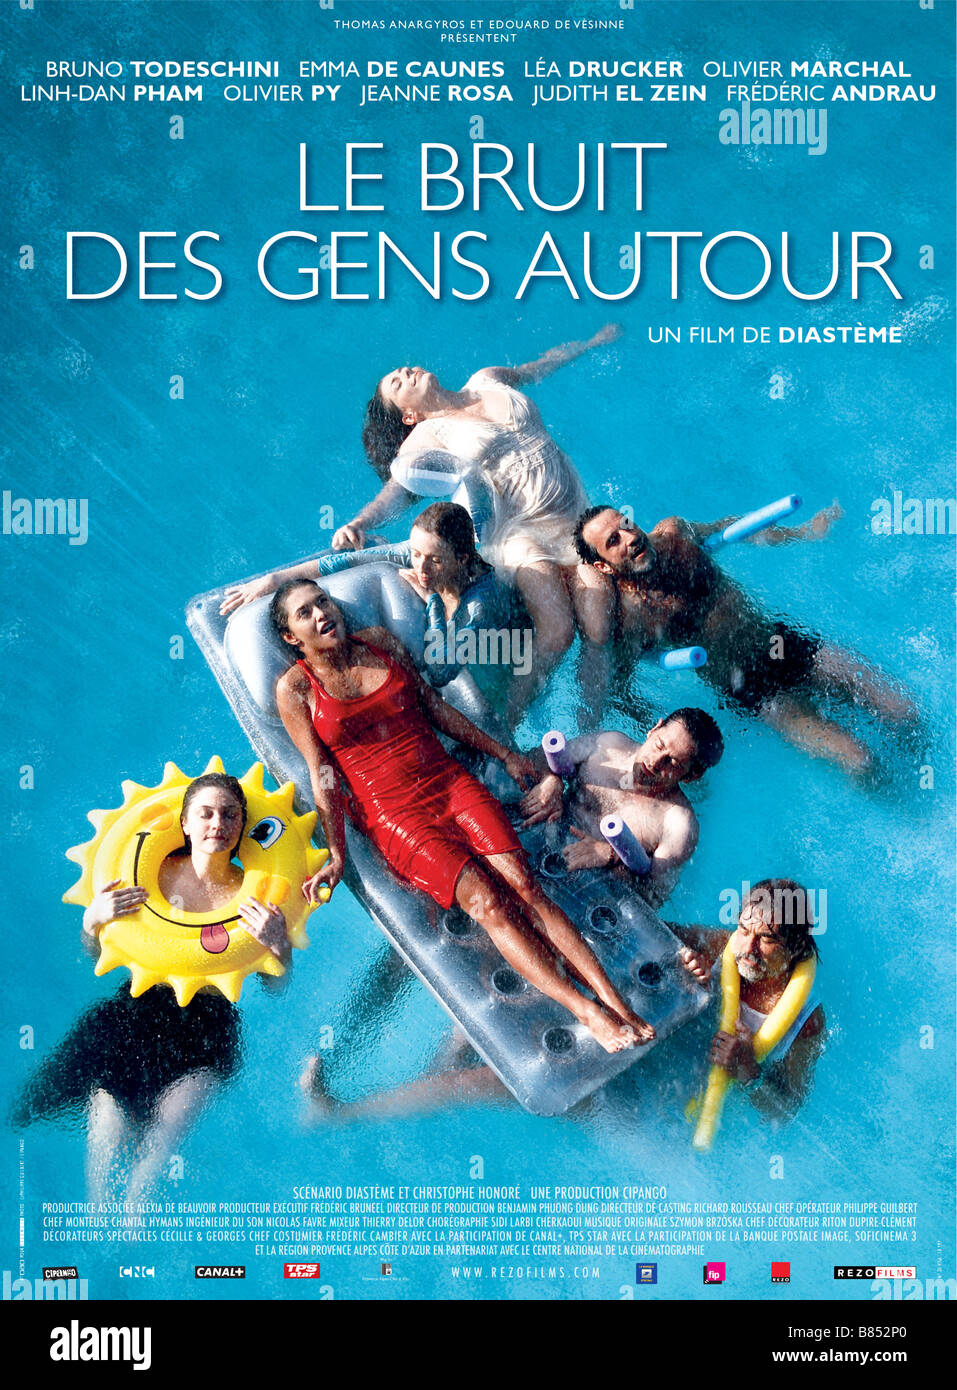 Le bruit des gens autour Anno : 2008 Francia Direttore: Diastème poster (FR) Foto Stock